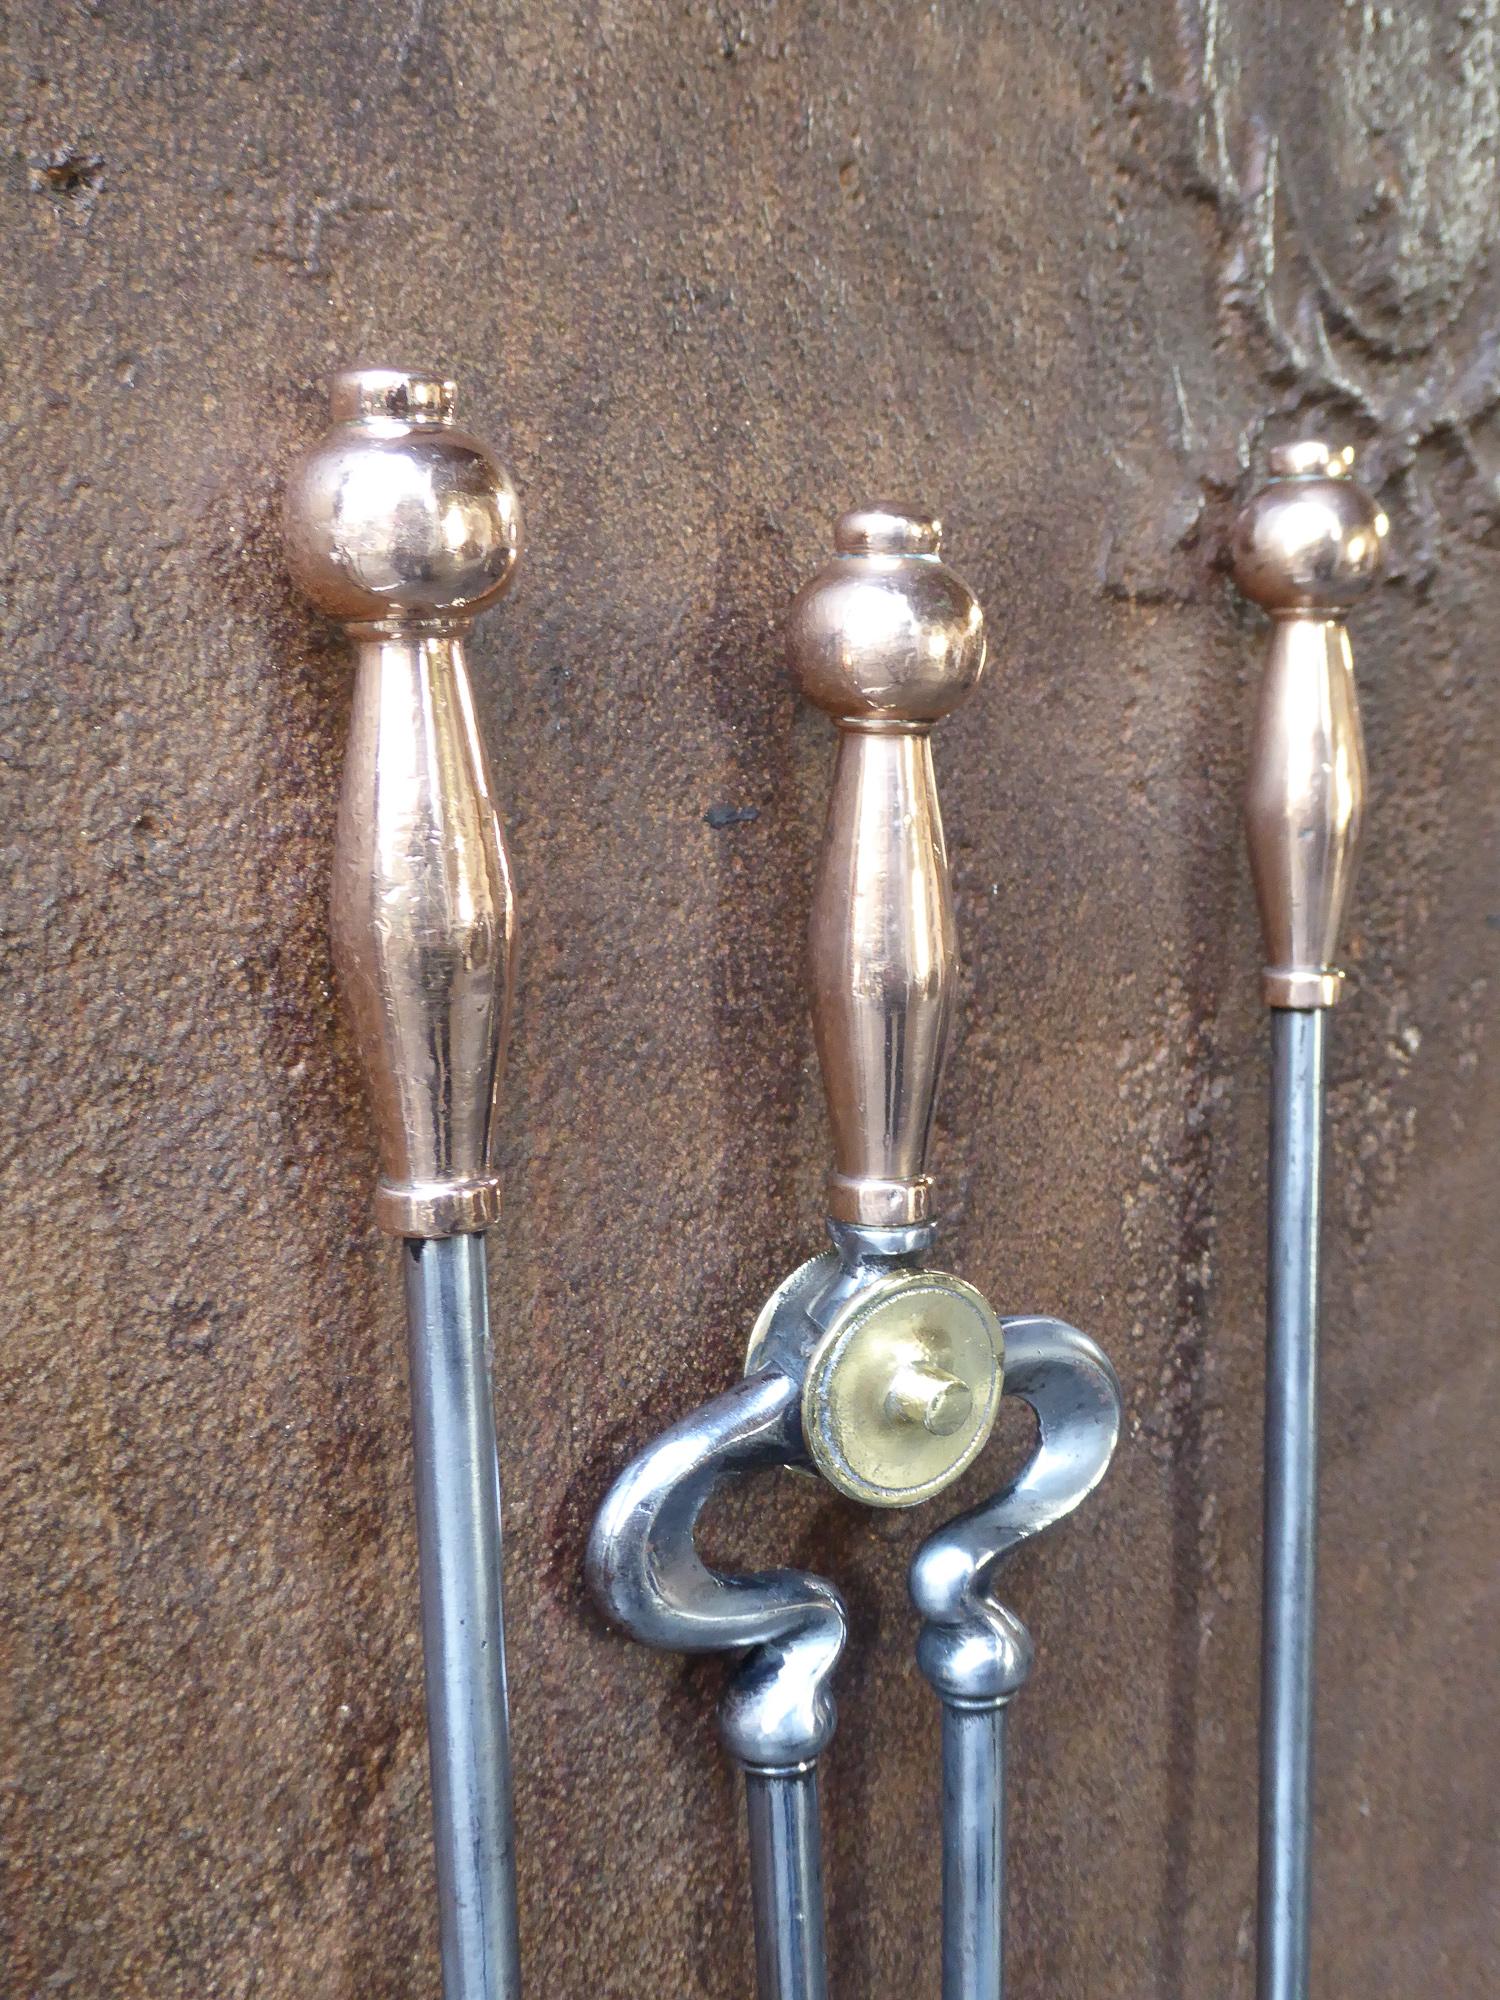 Magnifique ensemble d'outils de cheminée de style victorien anglais du 19e siècle. Les outils sont en cuivre poli, en laiton poli et en acier poli. L'ensemble est en bon état et fonctionne parfaitement.

